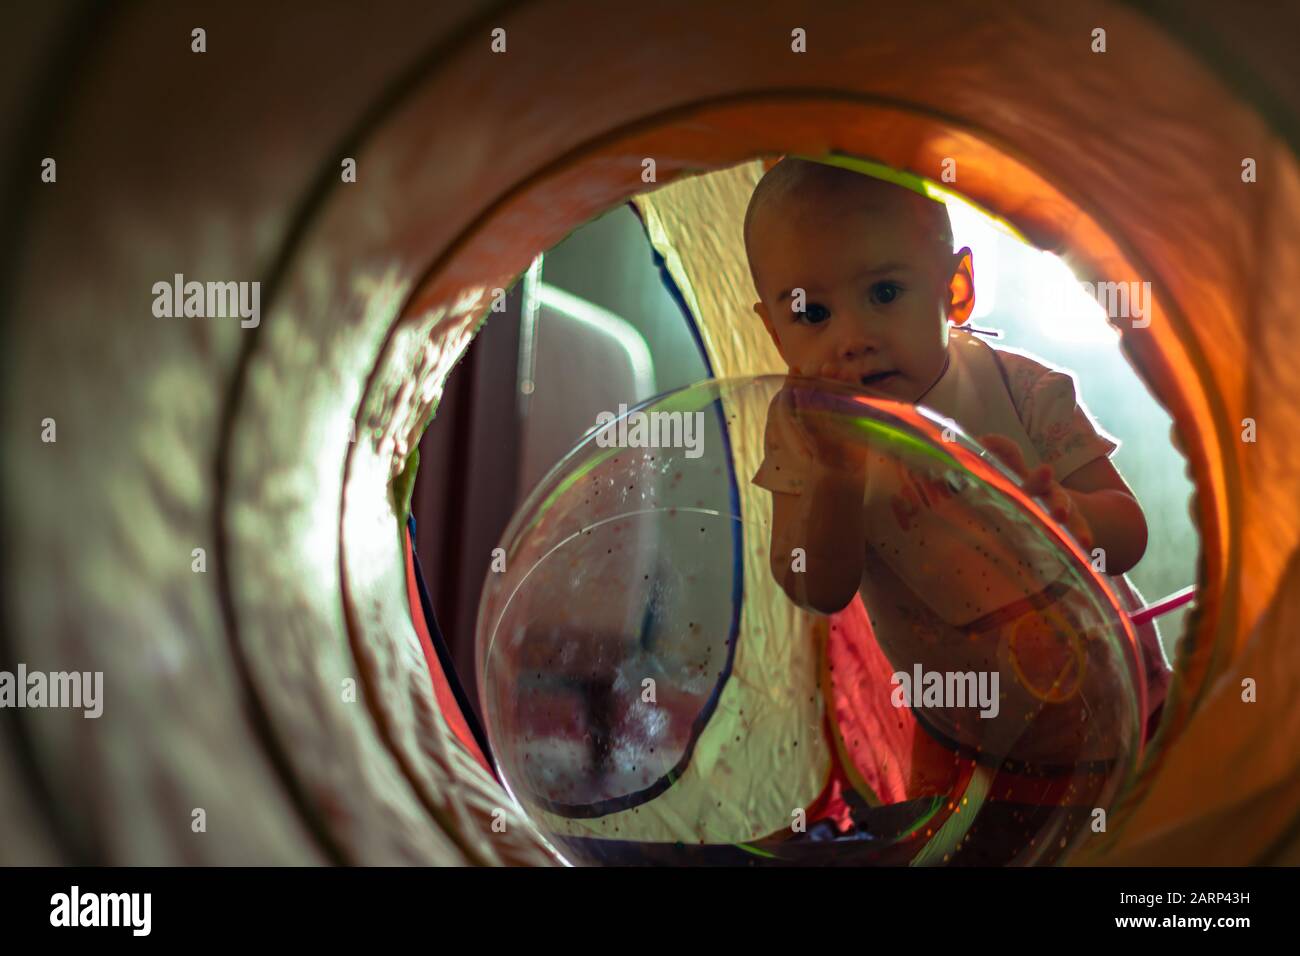 Une jolie petite fille penchée sur le ballon d'air transparent et regardant la caméra à travers un tunnel coloré. Banque D'Images